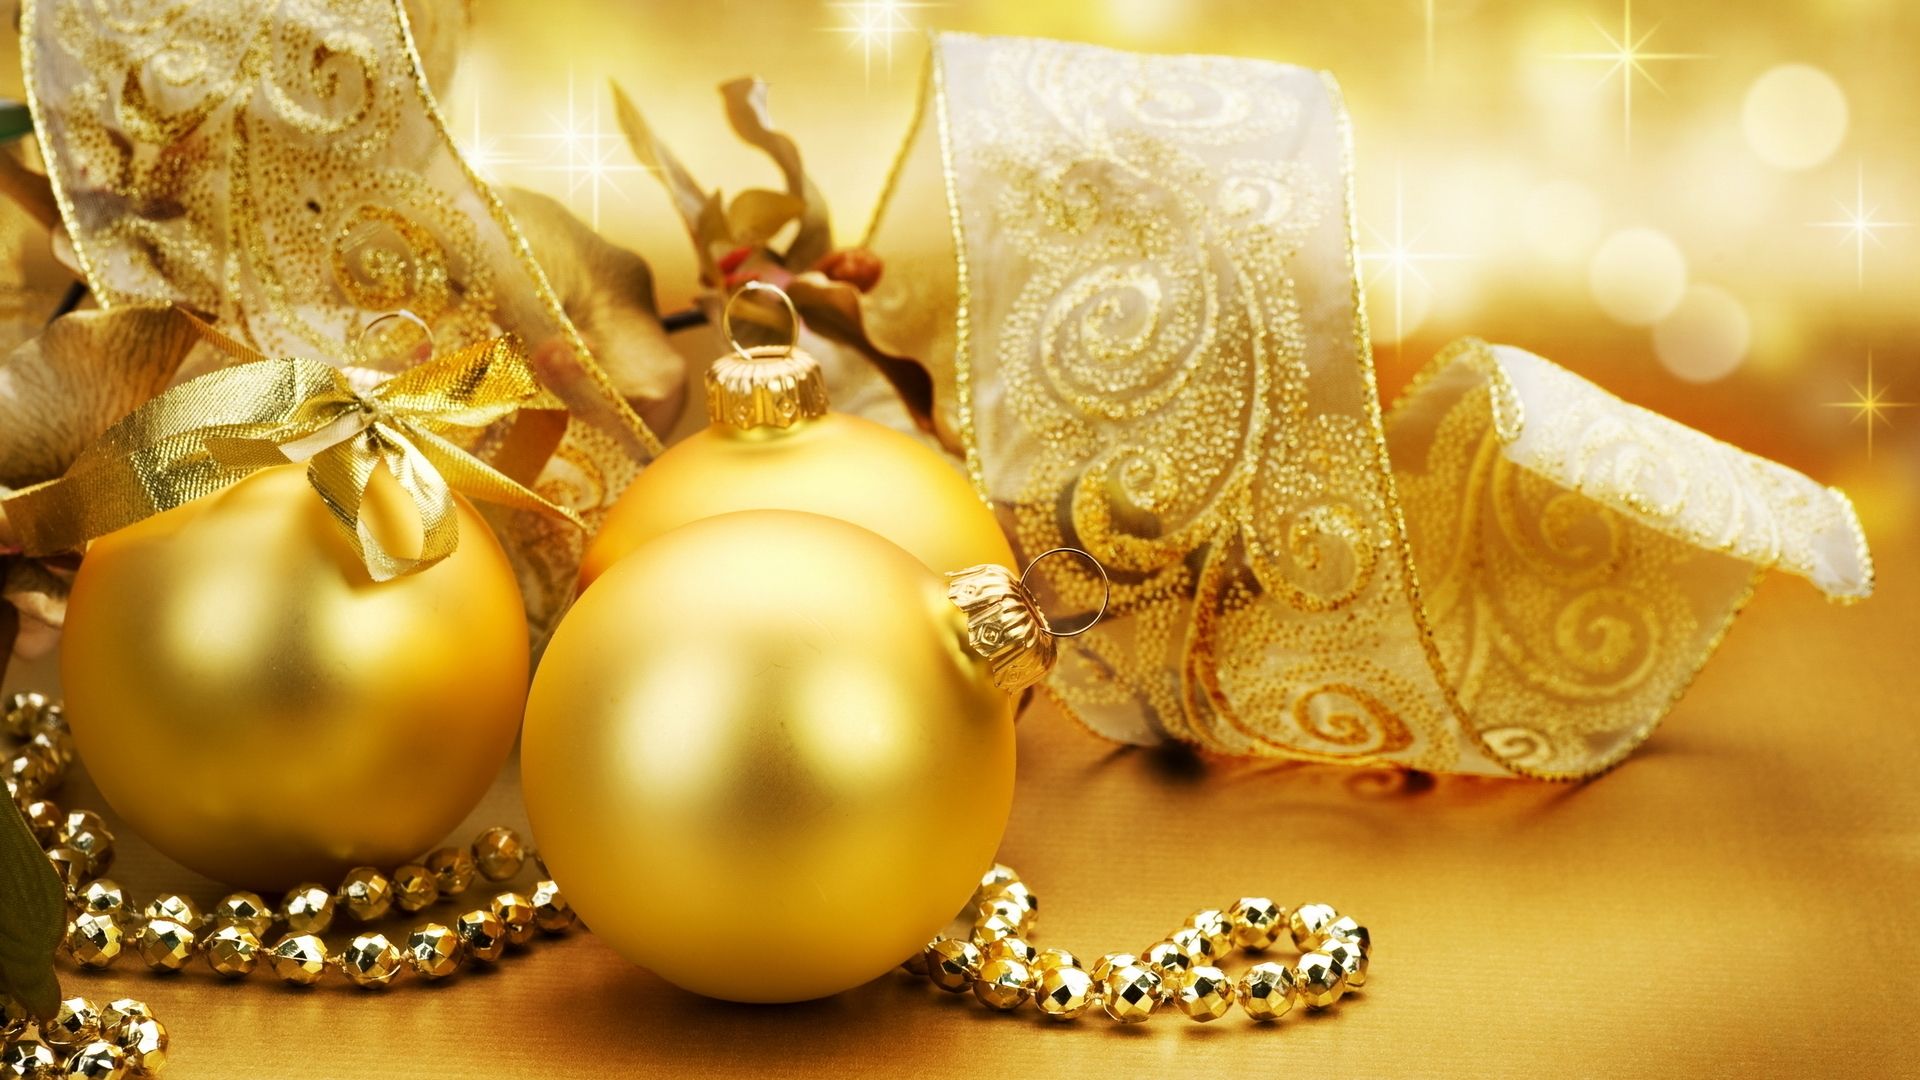 Christmas golden globes wallpaper. Christmas golden globes